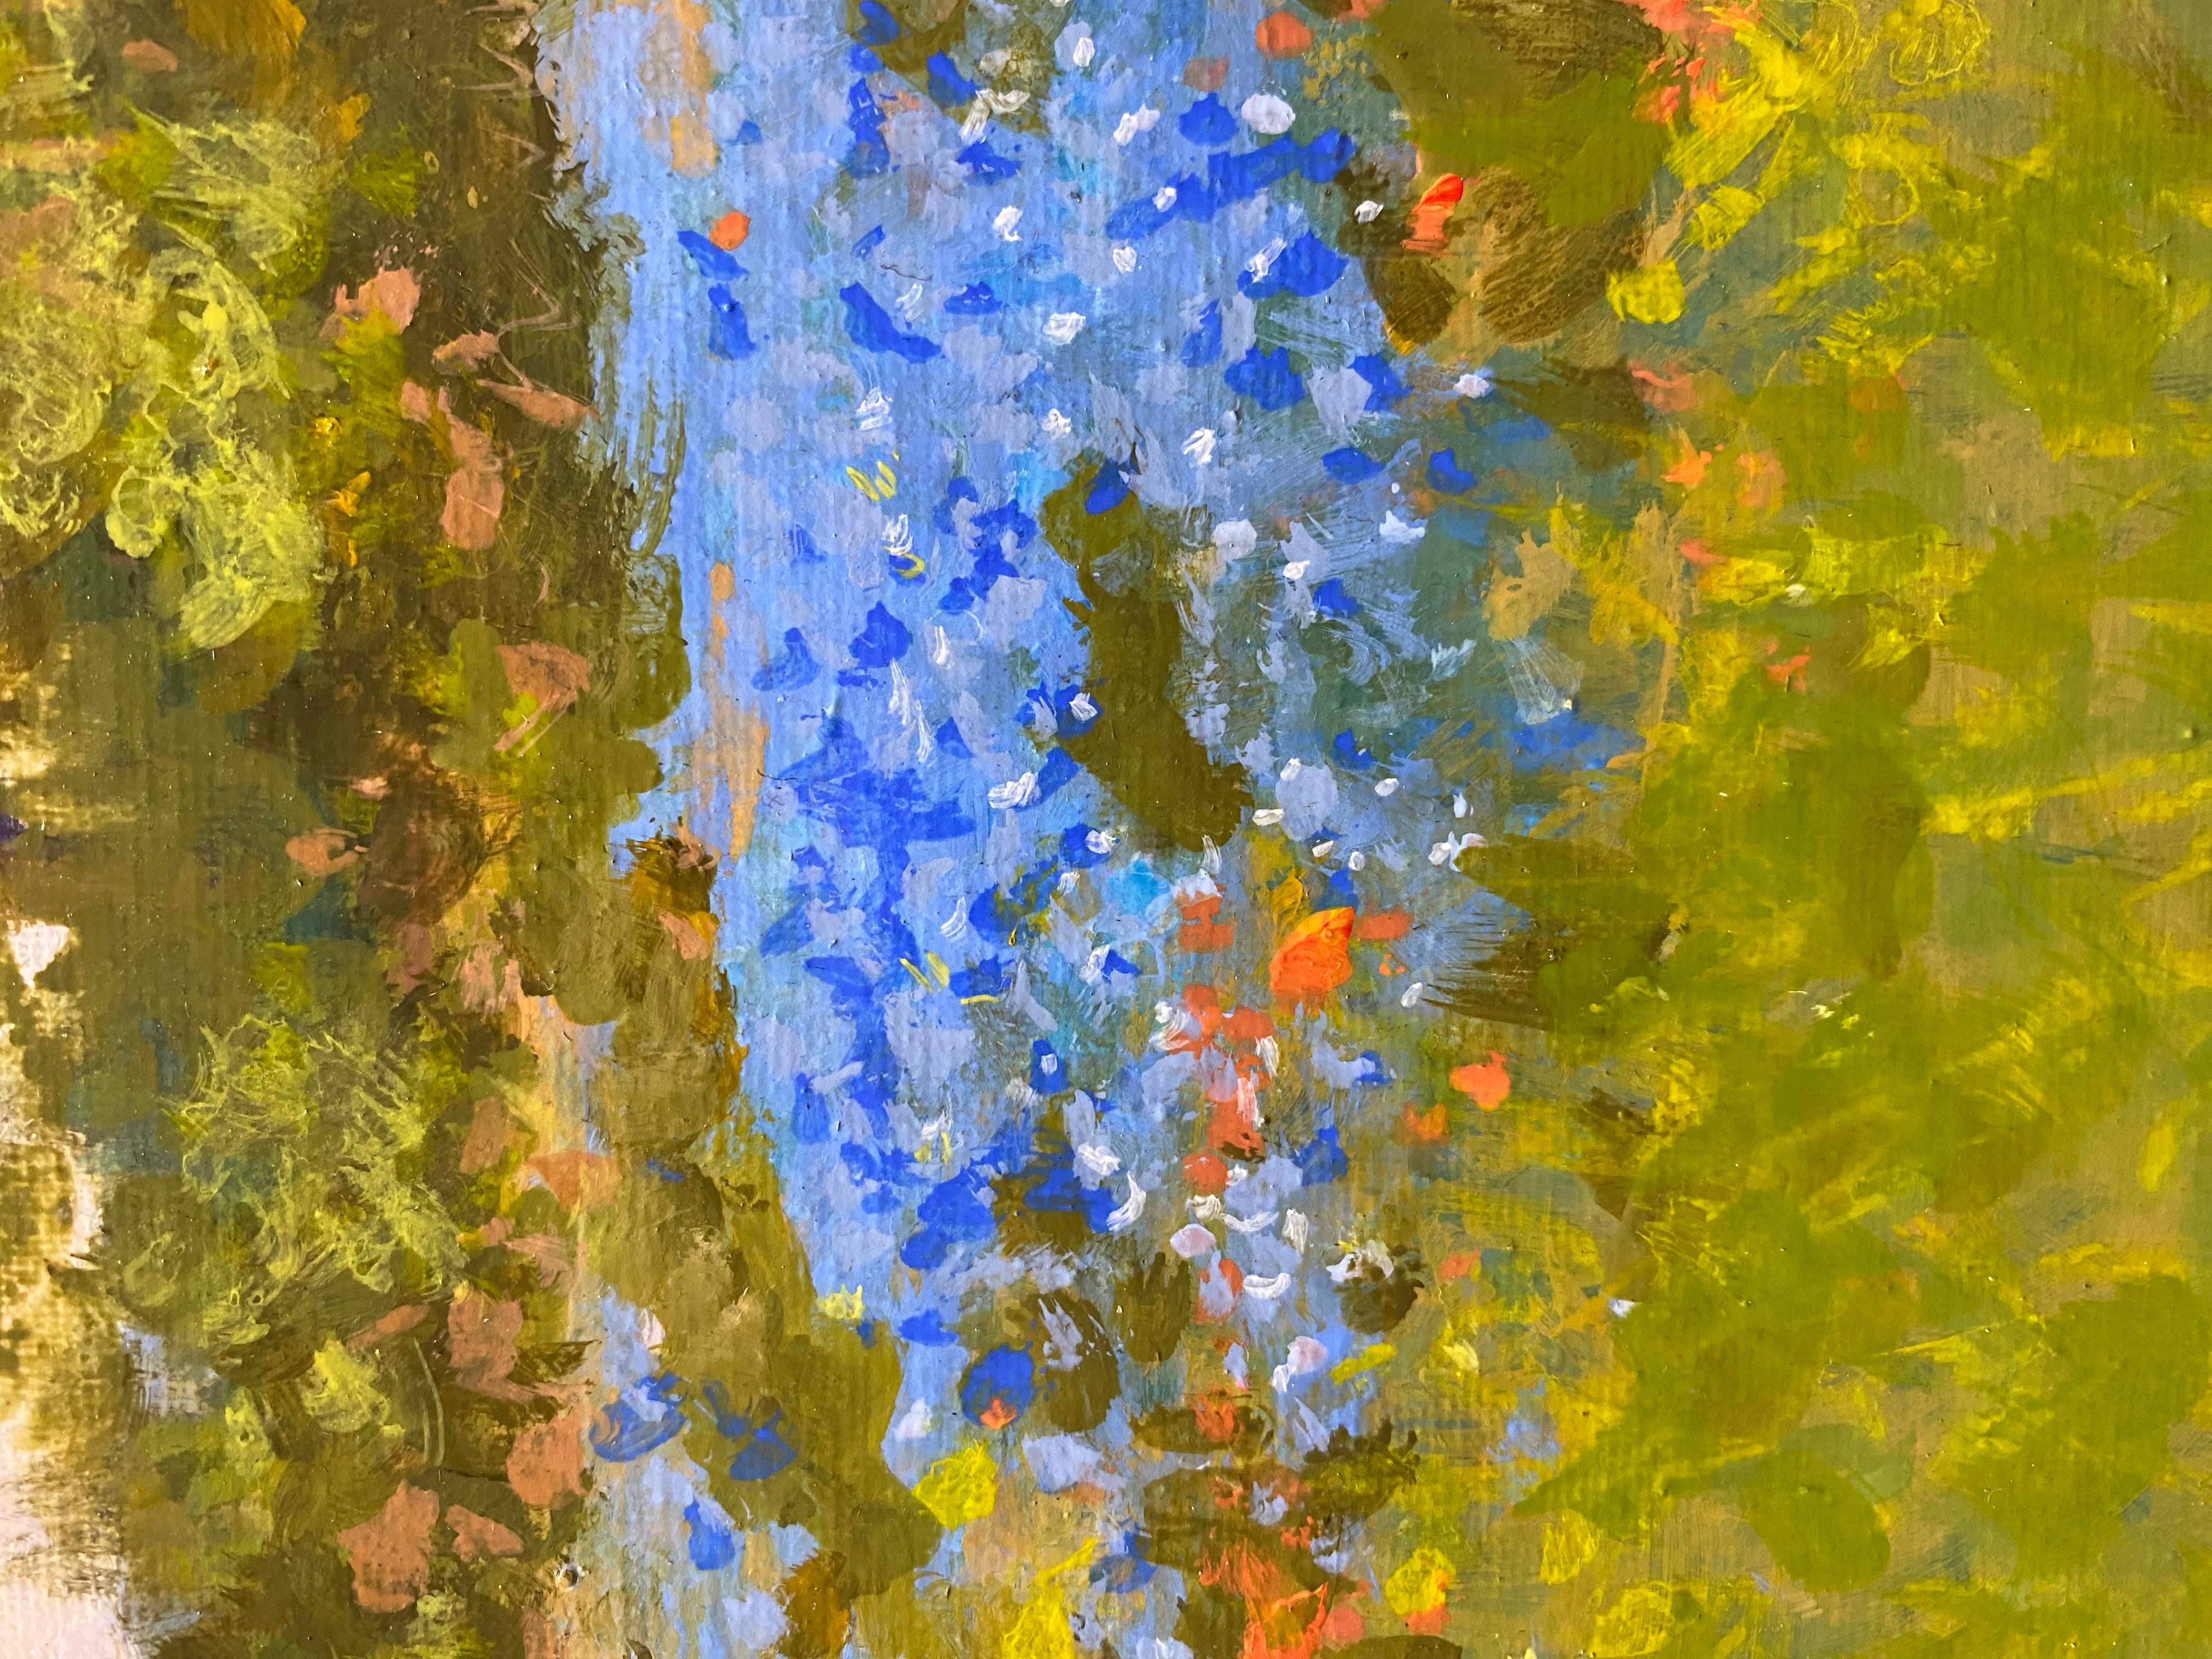 <p>Kommentare des Künstlers<br />Bluebonnet-Blumen wachsen am Straßenrand auf einem Hochplateau in der Nähe von Carta Valley, Texas. Ihre Blütenblätter bilden einen lebhaften Kontrast zu dem satten Grün der Landschaft. Obwohl sich die Sonne hinter